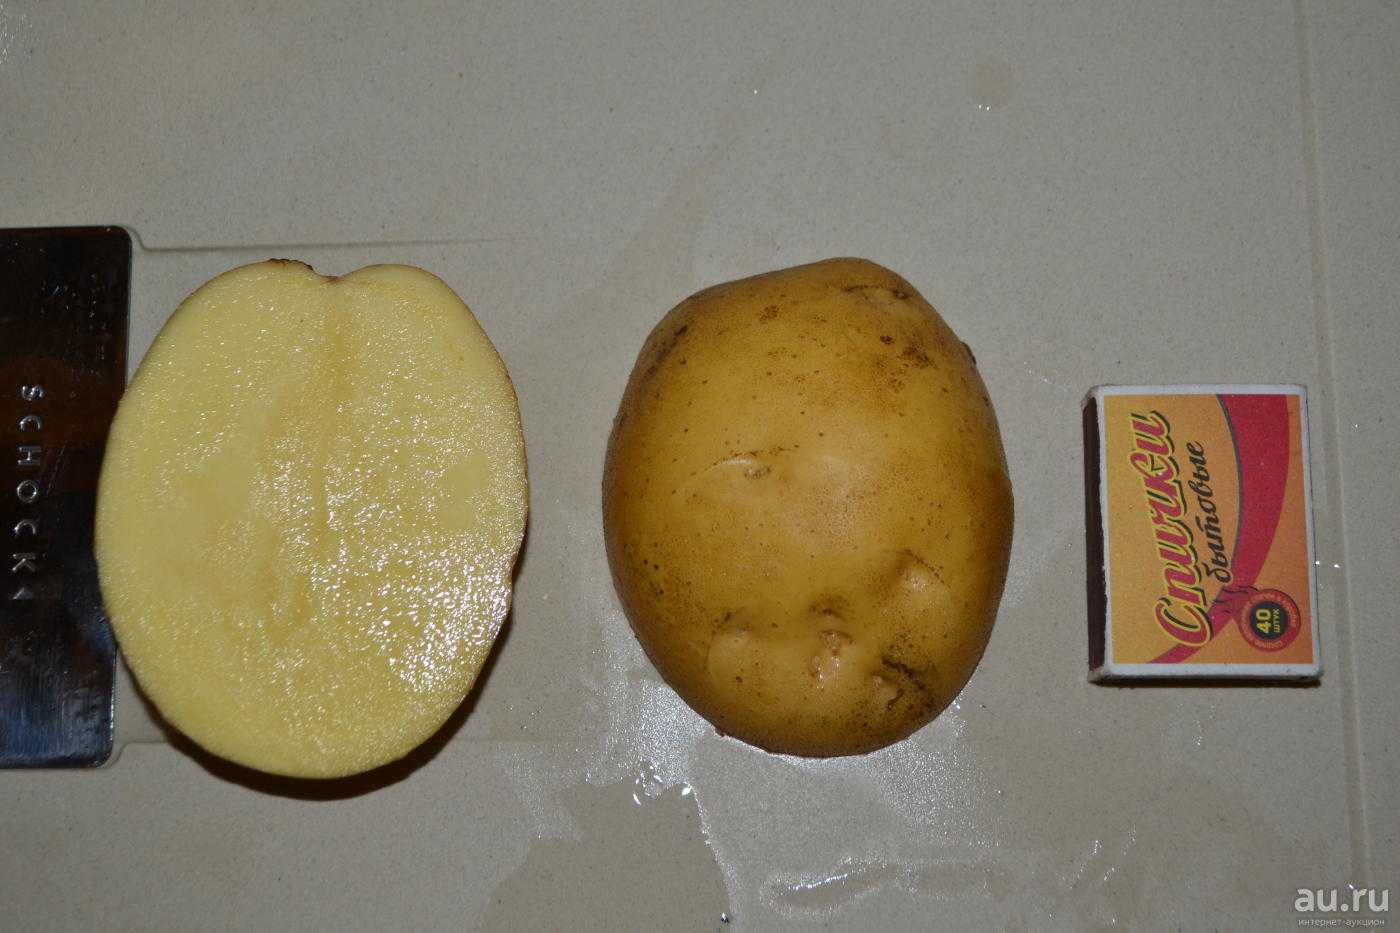 Триумф картофель характеристика отзывы. Сорт картофеля Латона. Сорт Латона картофель характеристика. Картофель Латона описание сорта. Картошка ранняя Триумф.